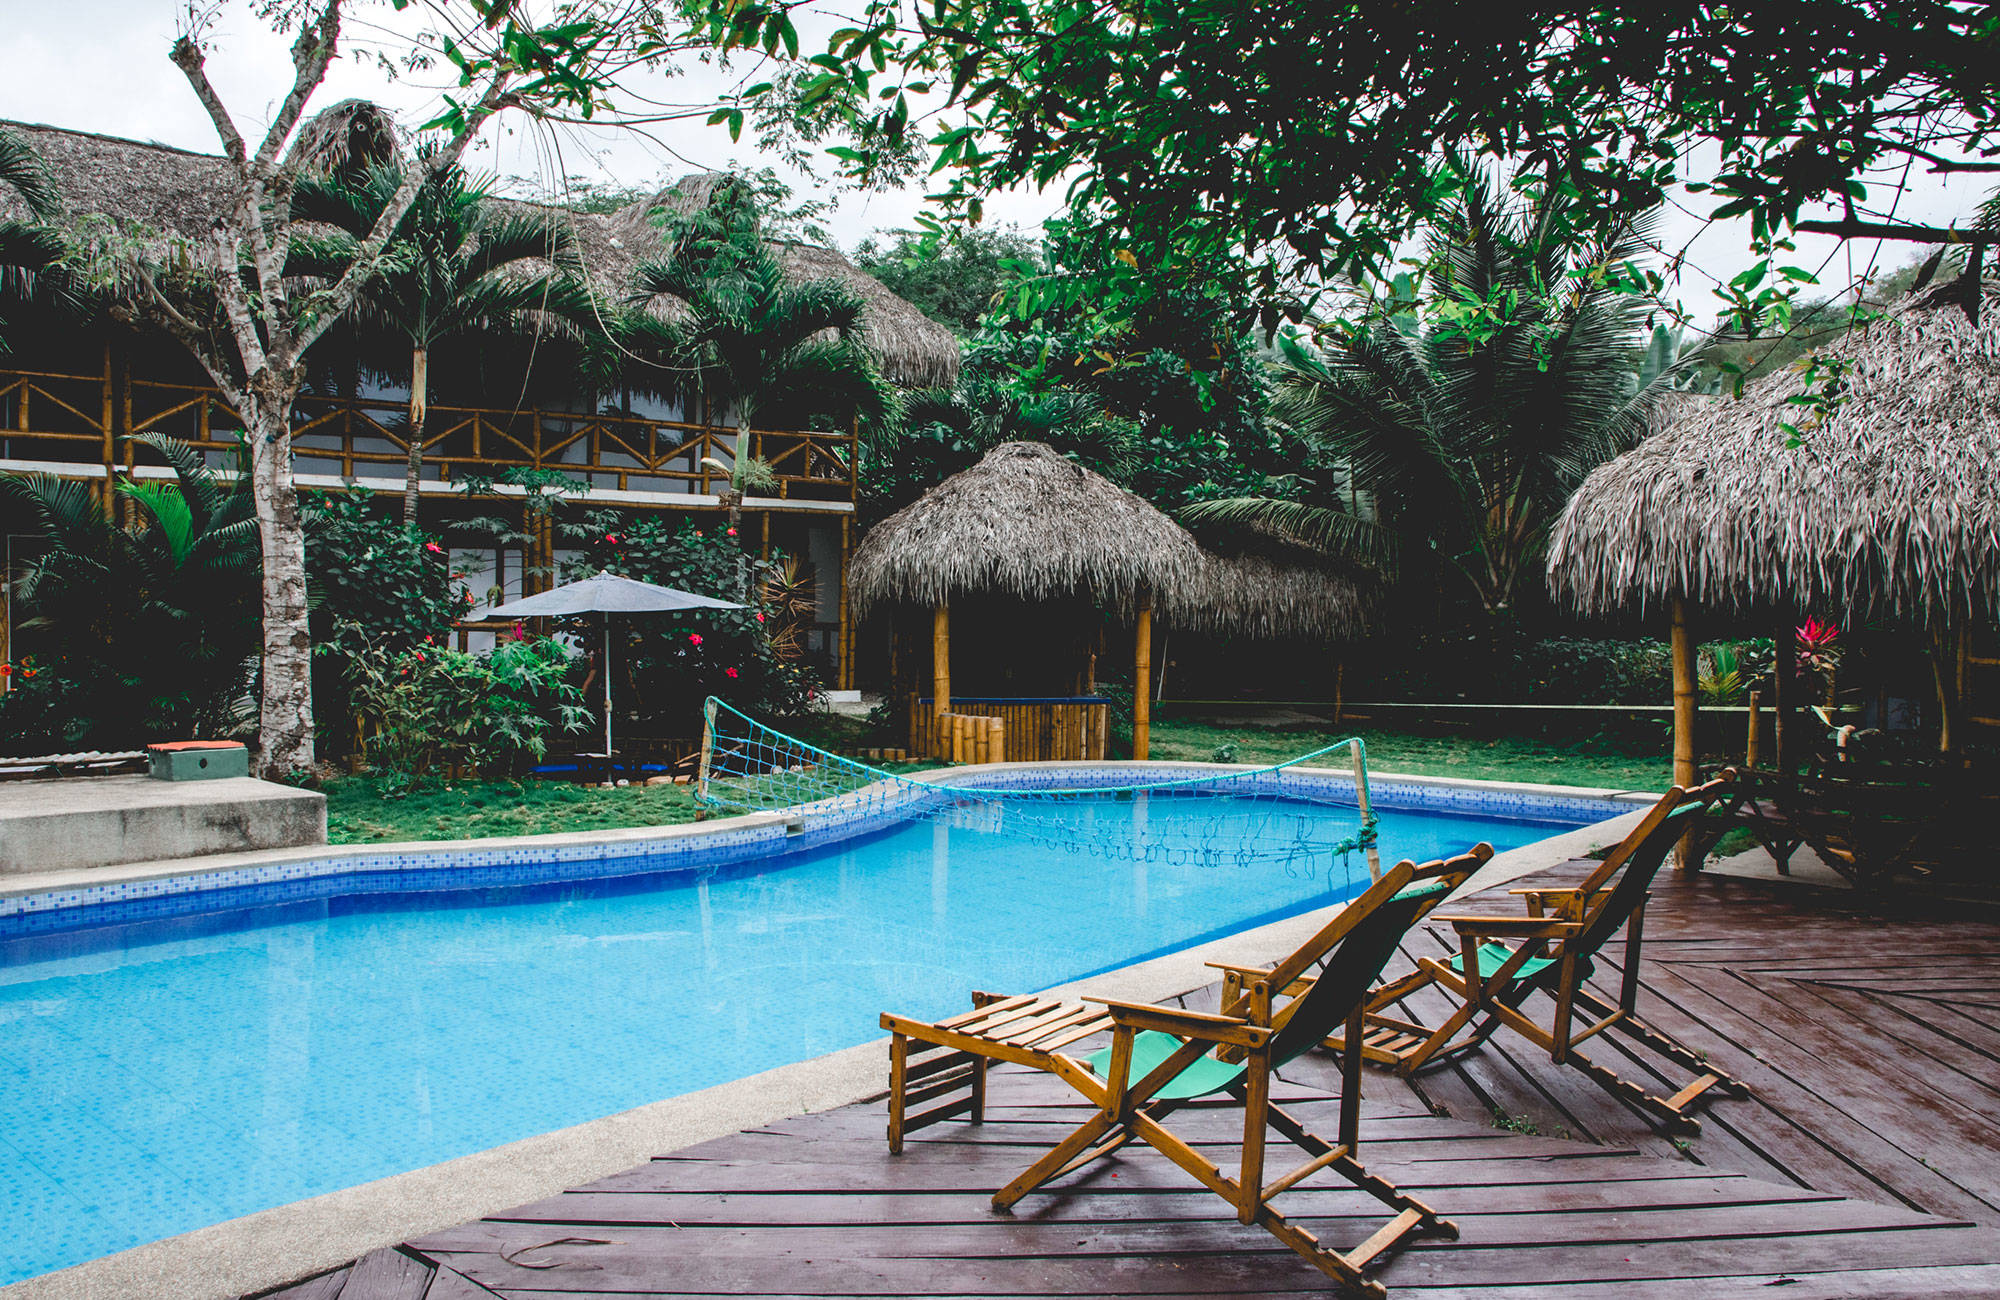 zwembad bij accommodatie in montanita | 3 (vrijwilligers)projecten in kleurrijk Ecuador | KILROY